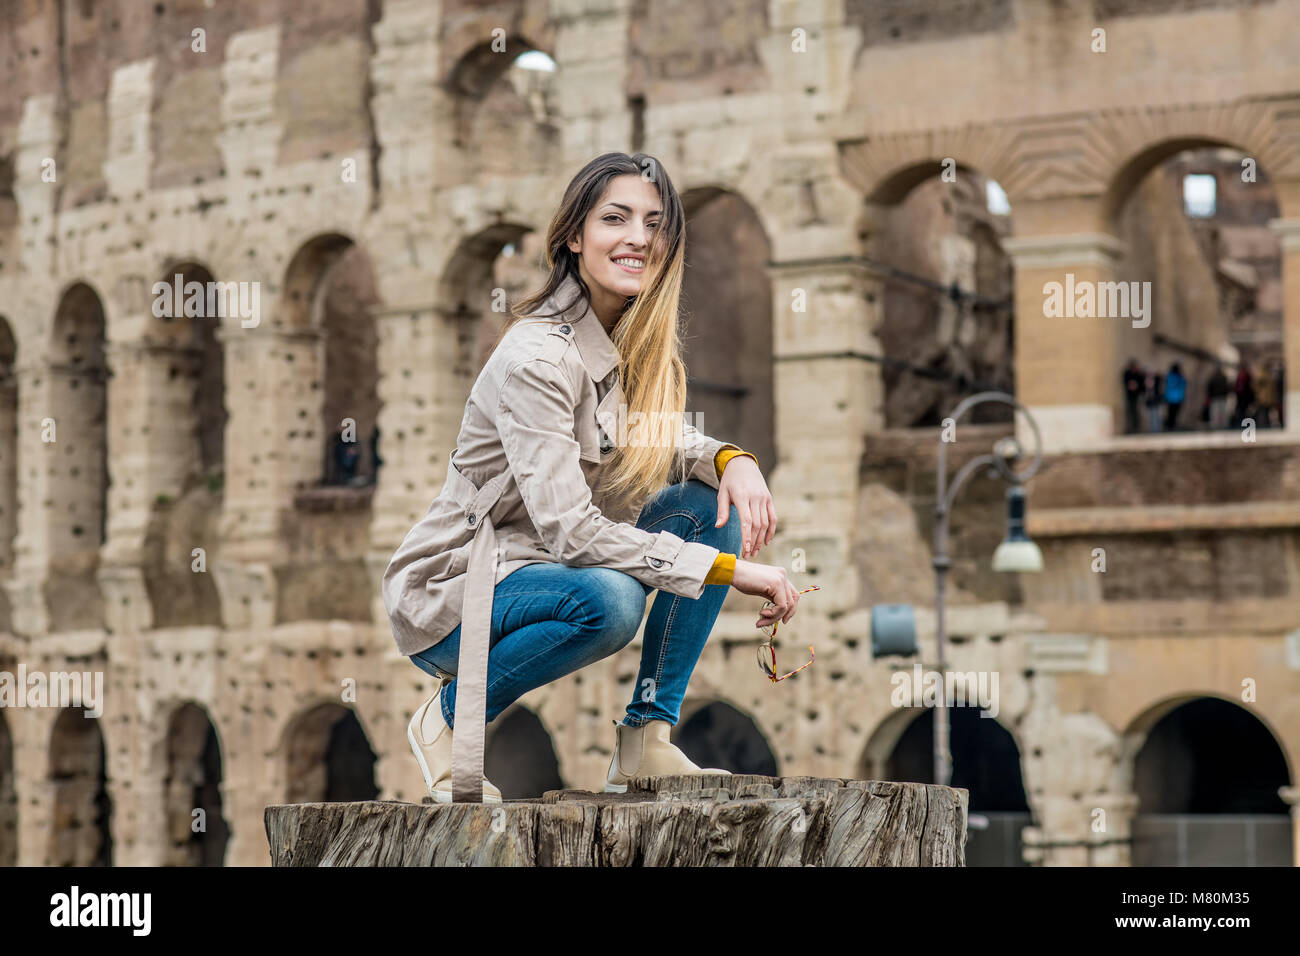 Junge hübsche touristische Frau lächelnd und am Colosseum Monument in Rom Italien posing Stockfoto